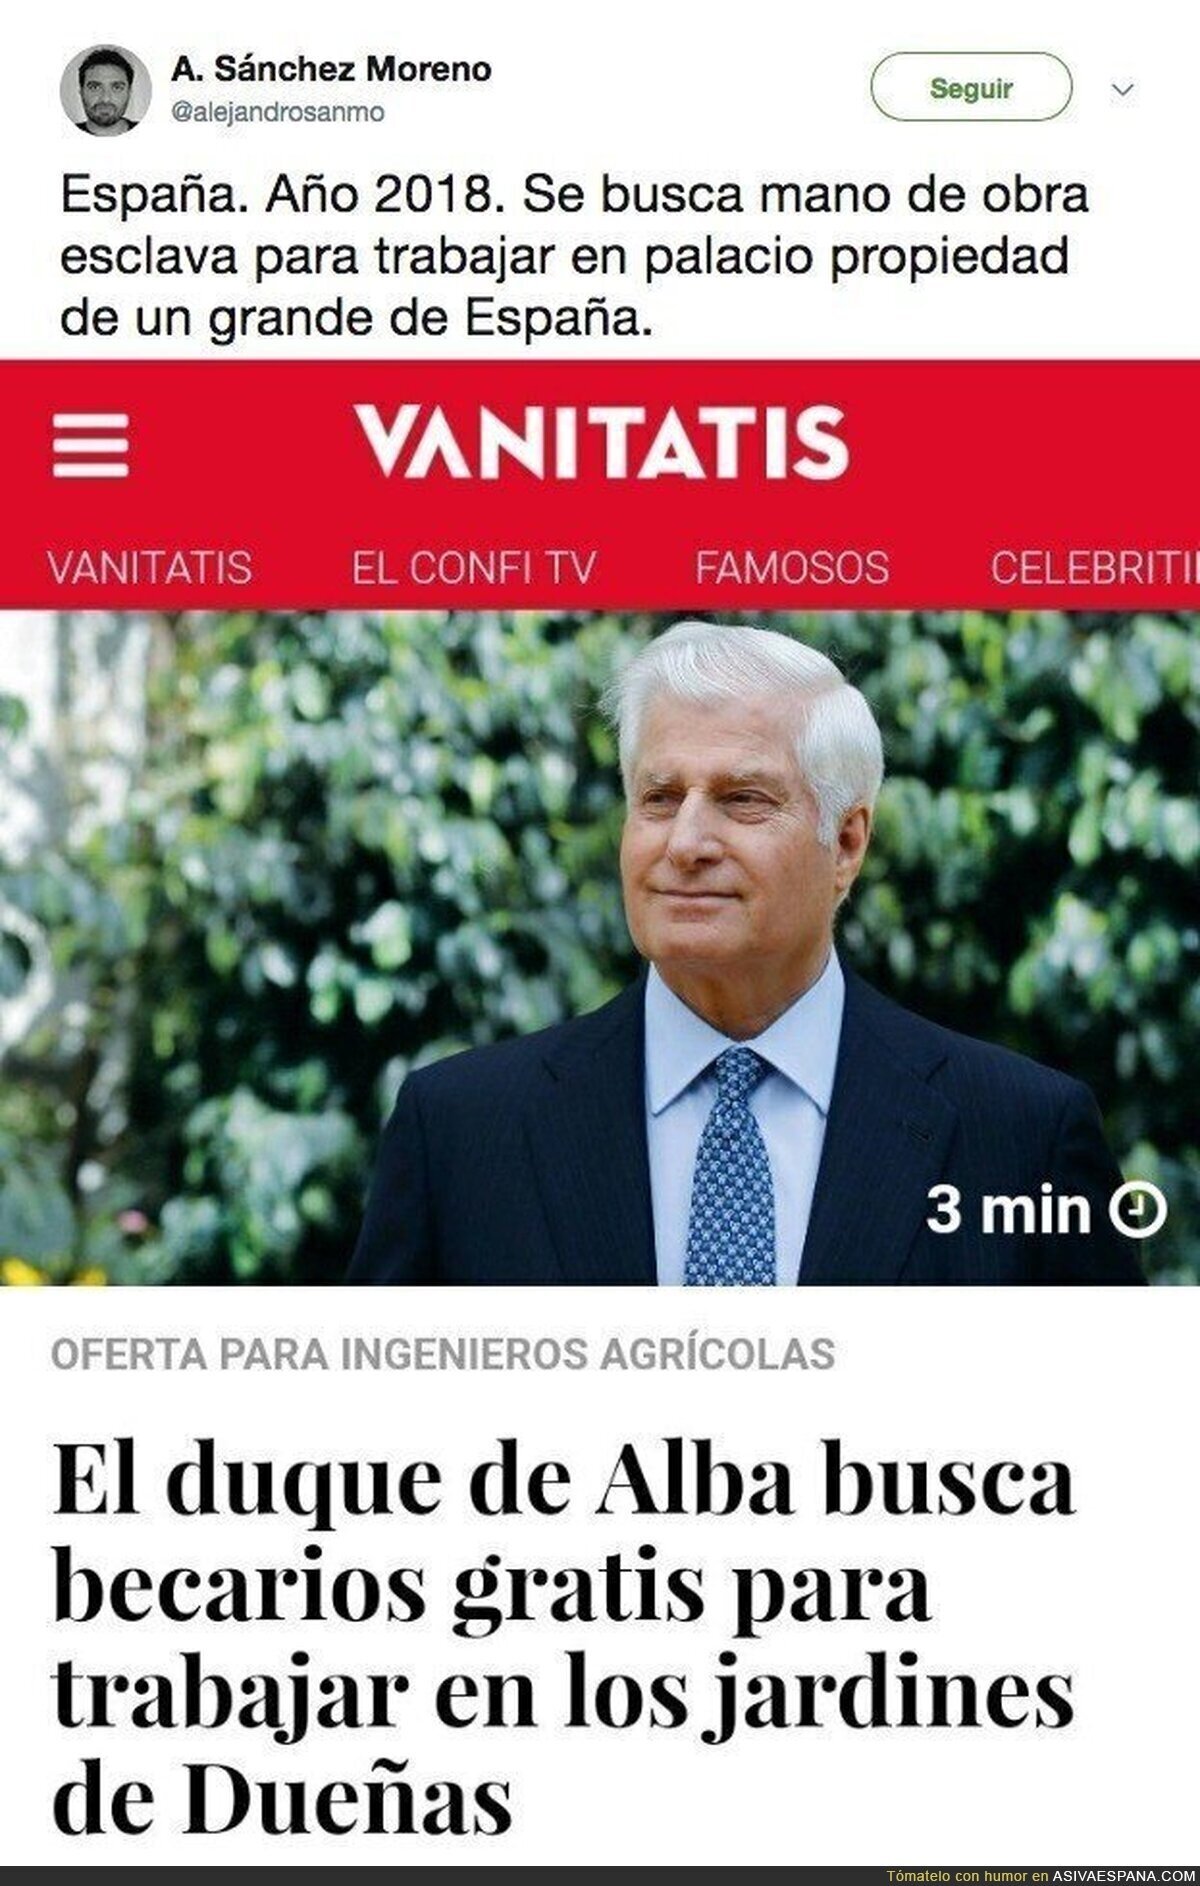 La crisis llega hasta al Ducado de Alba